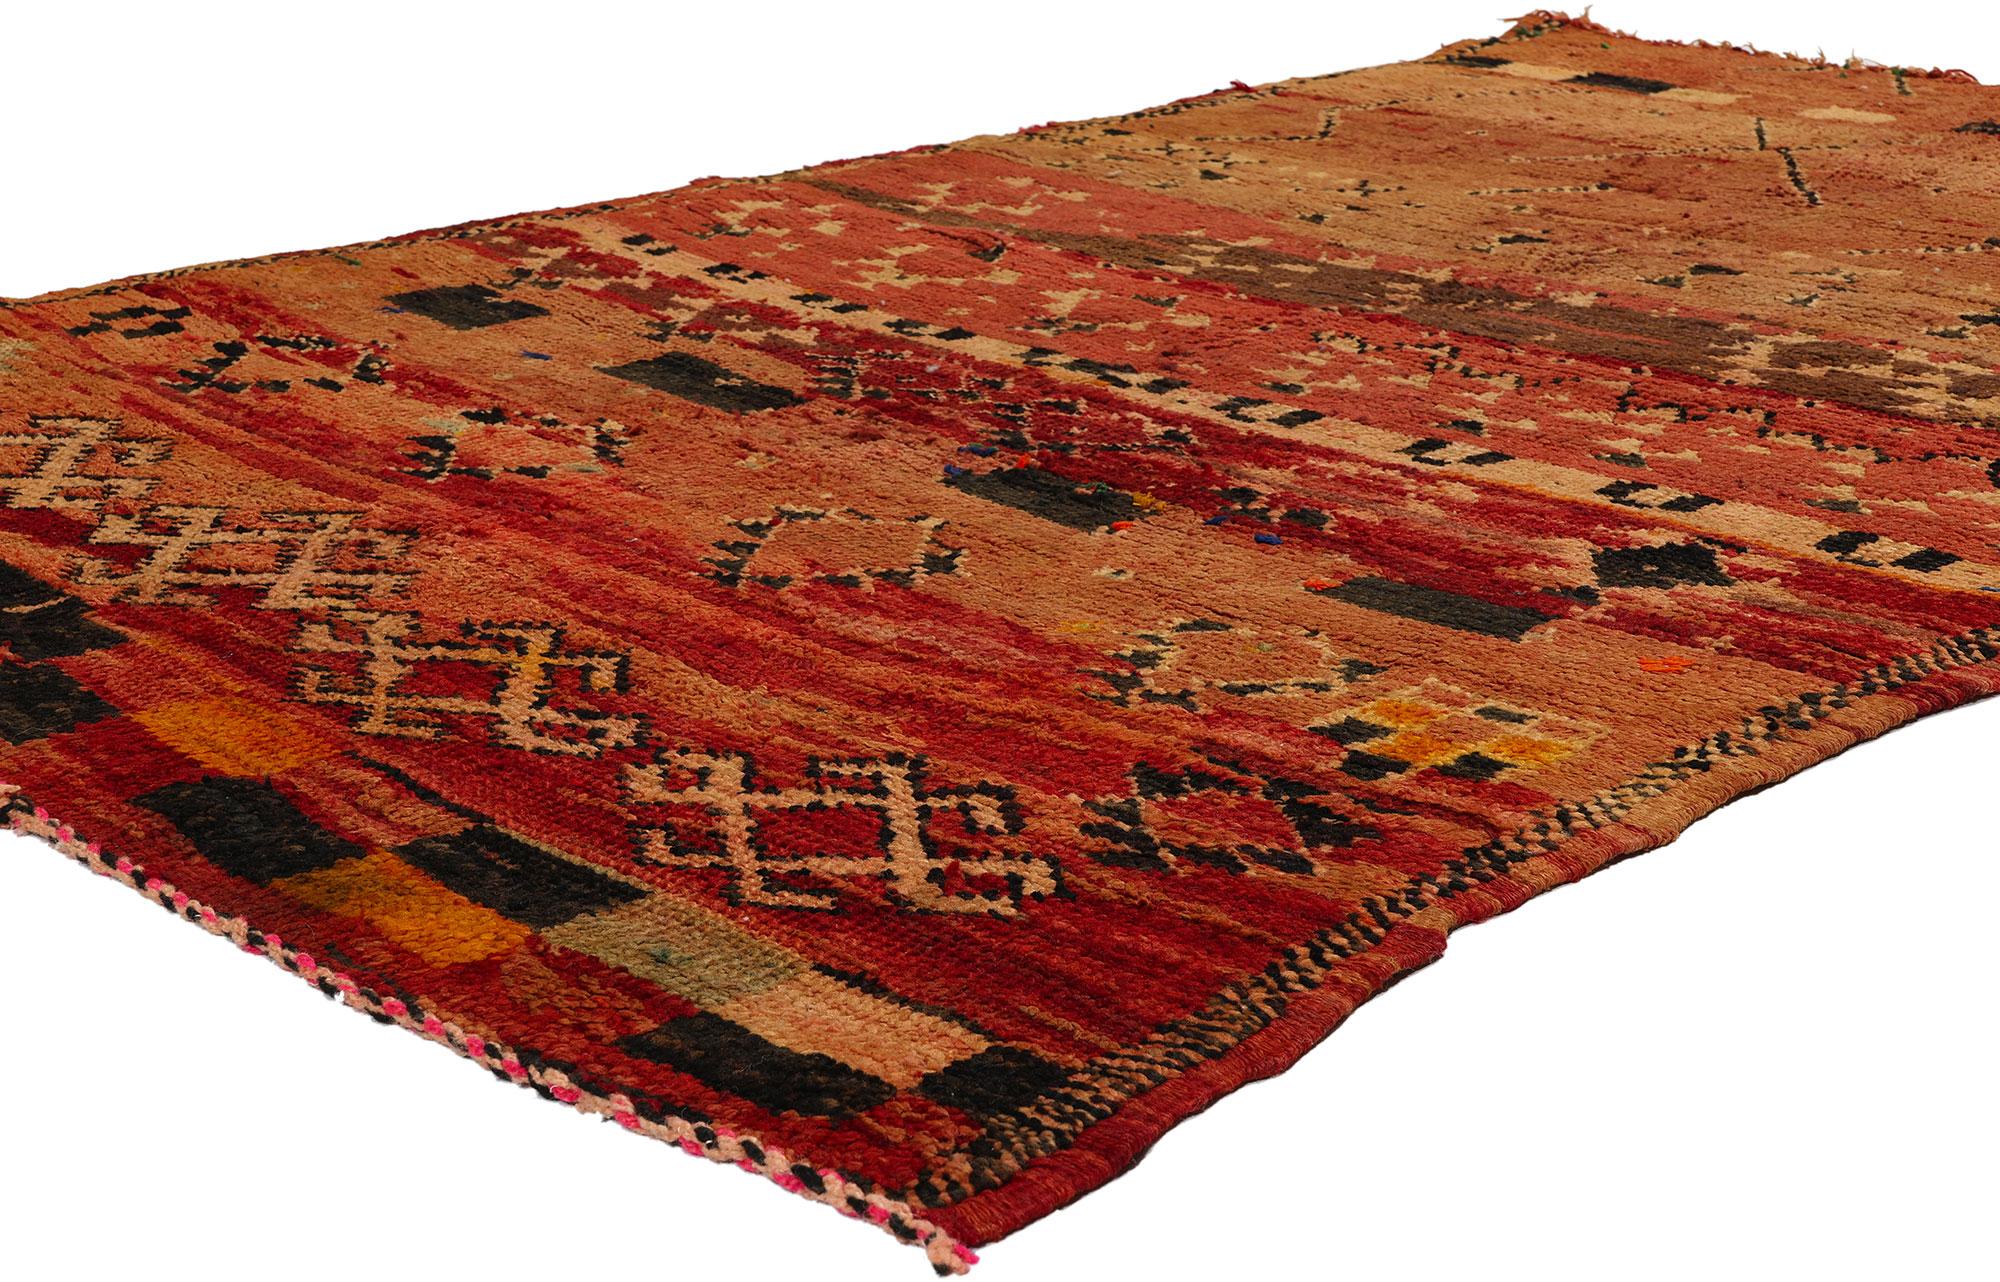 21727 Tapis marocain Boujad rouge vintage, 04'09 x 07'03. Originaires de la région du Boujad au Maroc, les tapis Boujad sont plus que de simples revêtements de sol ; ce sont des trésors complexes tissés à la main qui incarnent l'héritage artistique